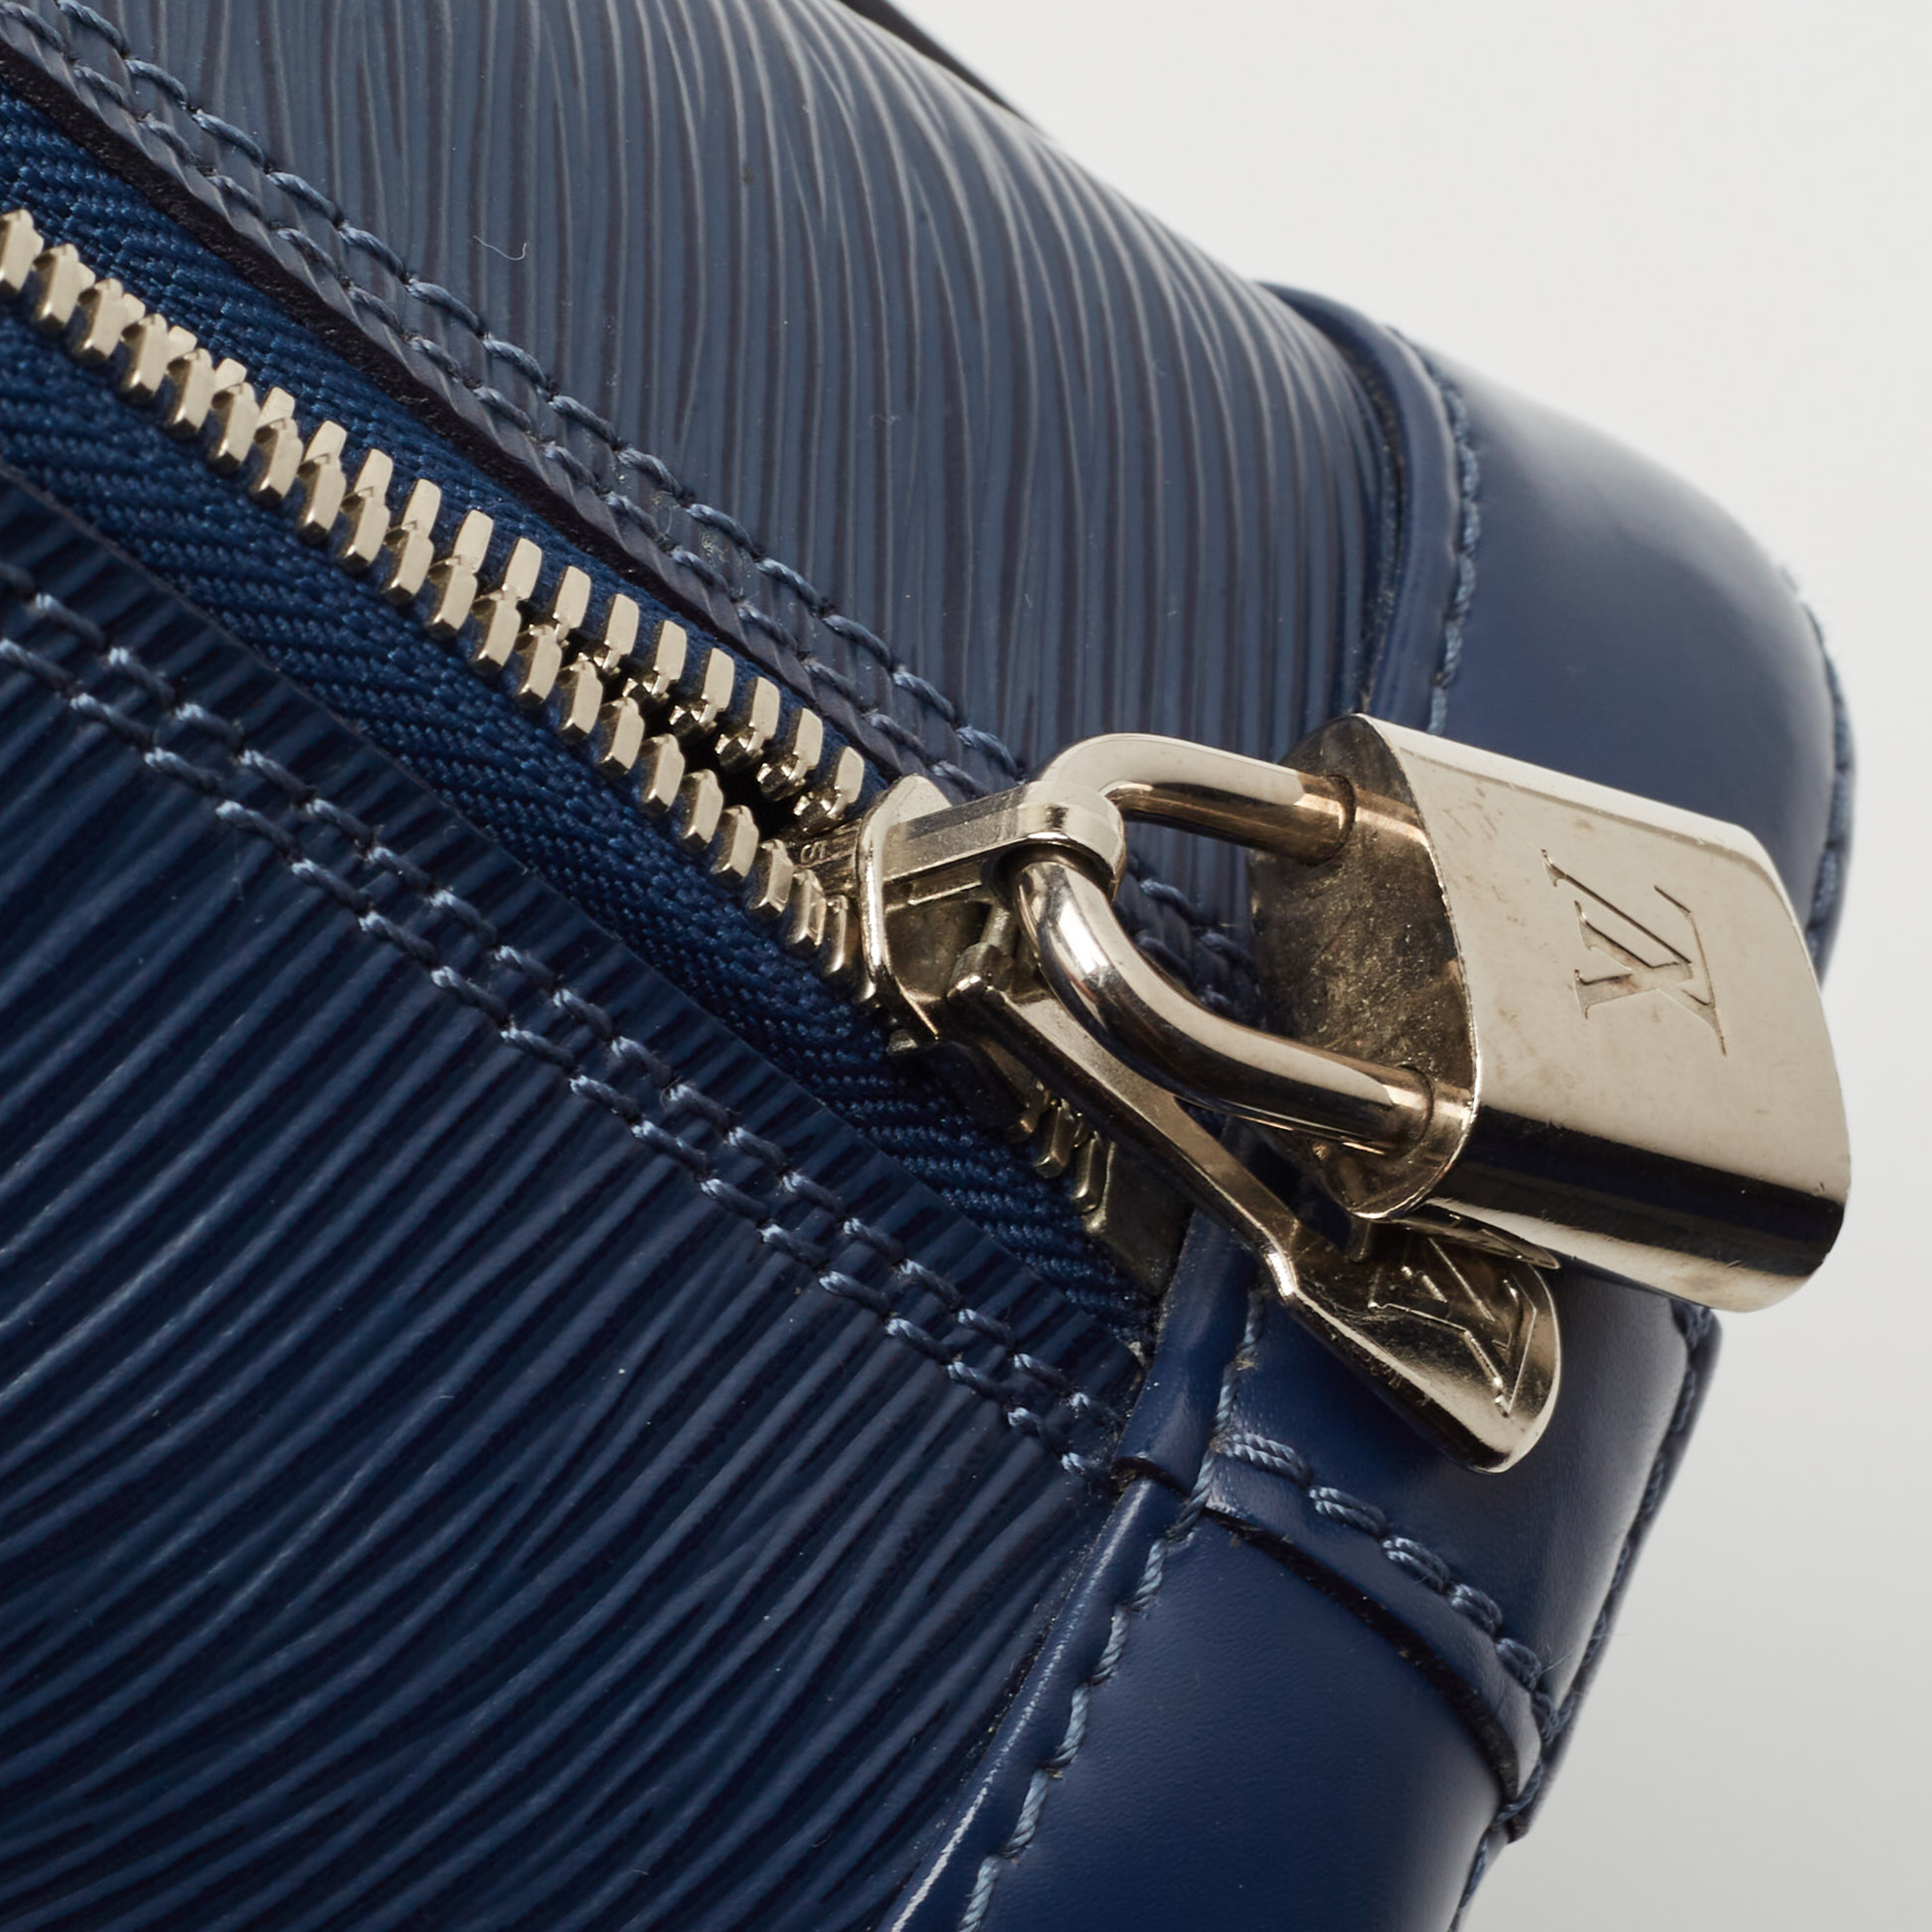 Louis Vuitton Myrtille Blue Epi Leather Alma BB Bag